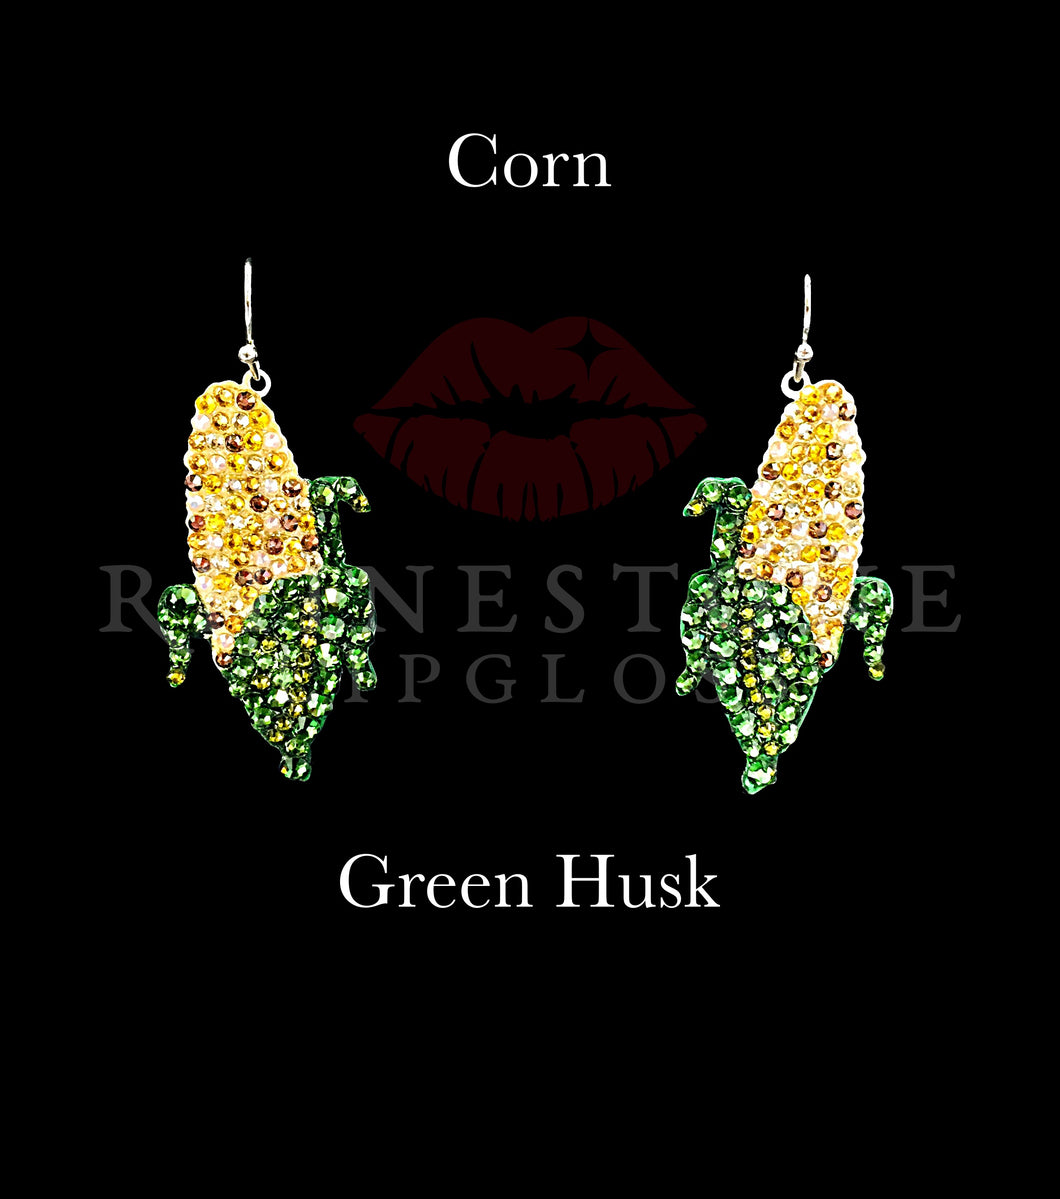 Corn Cobs - Tri-Color Corn, Green Leaves